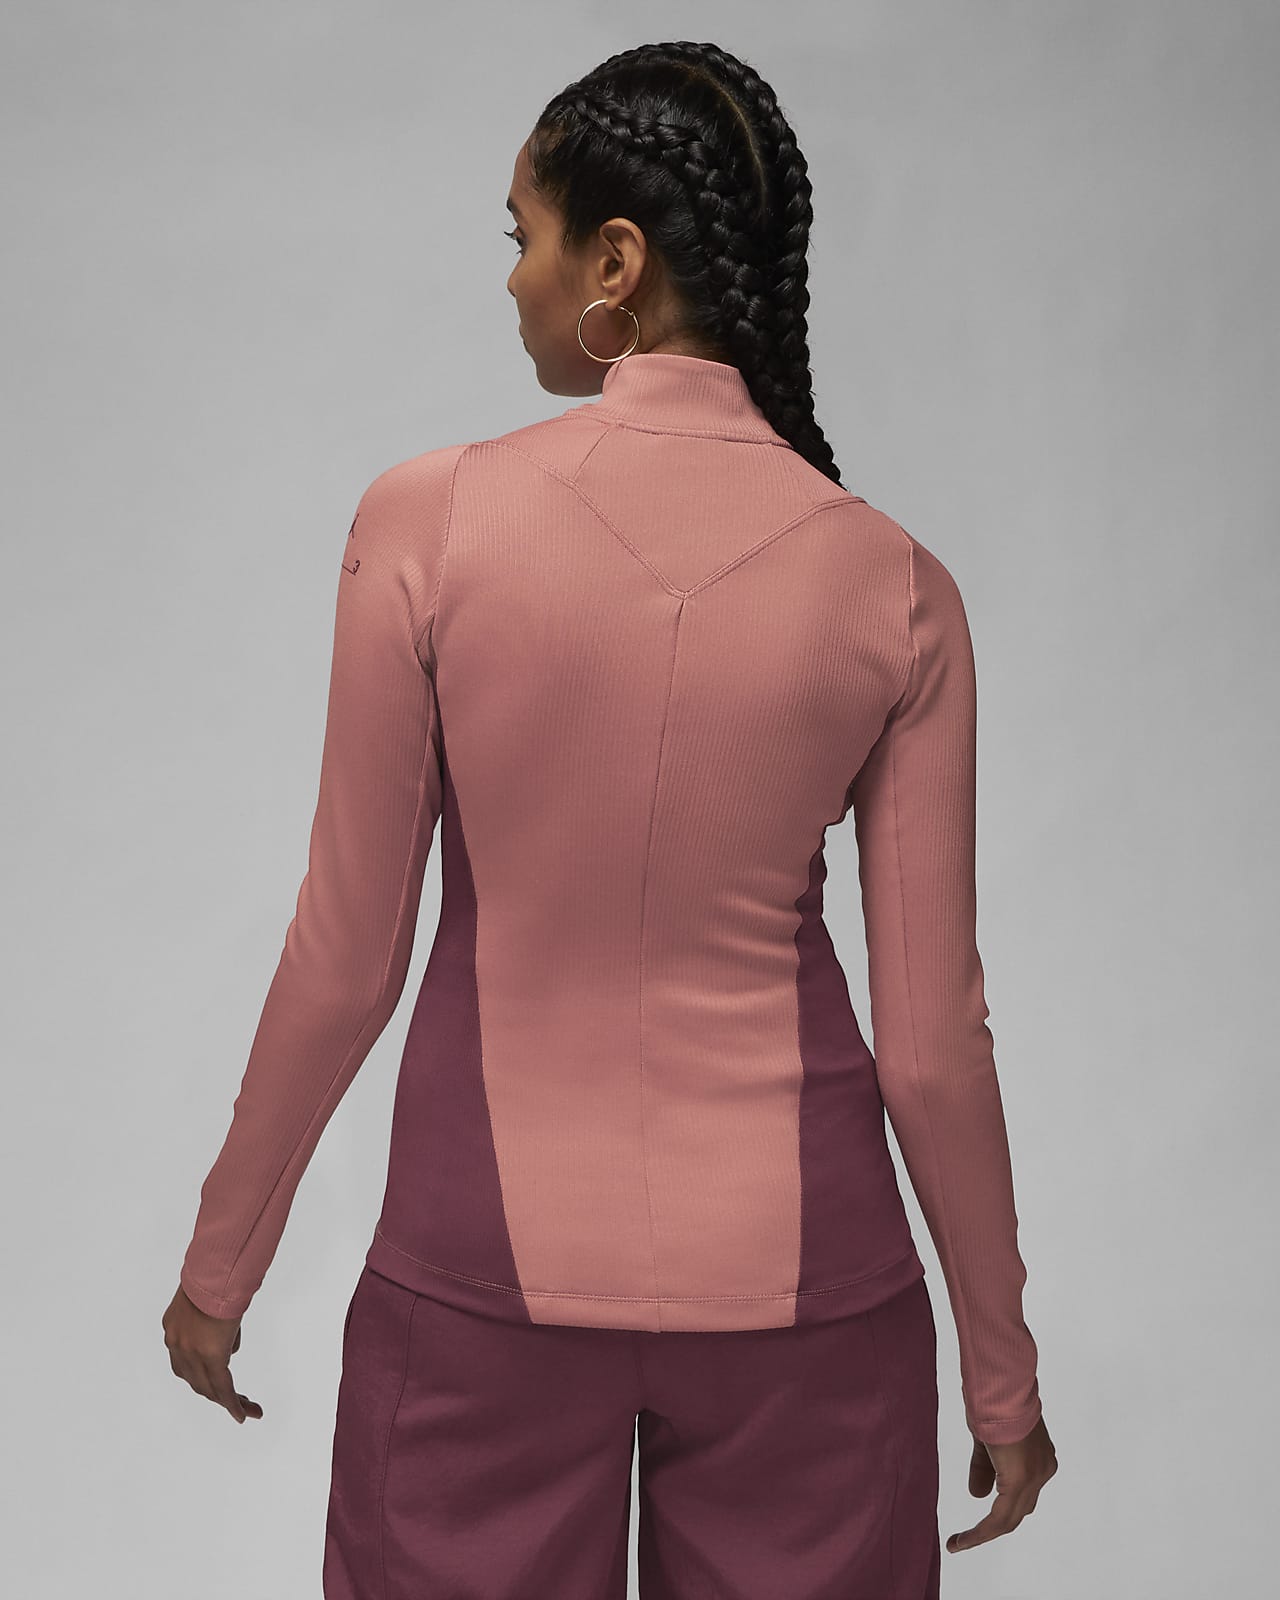 Jordan 23 Engineered Women's 1/4-Zip Long-Sleeve Top. Nike CA